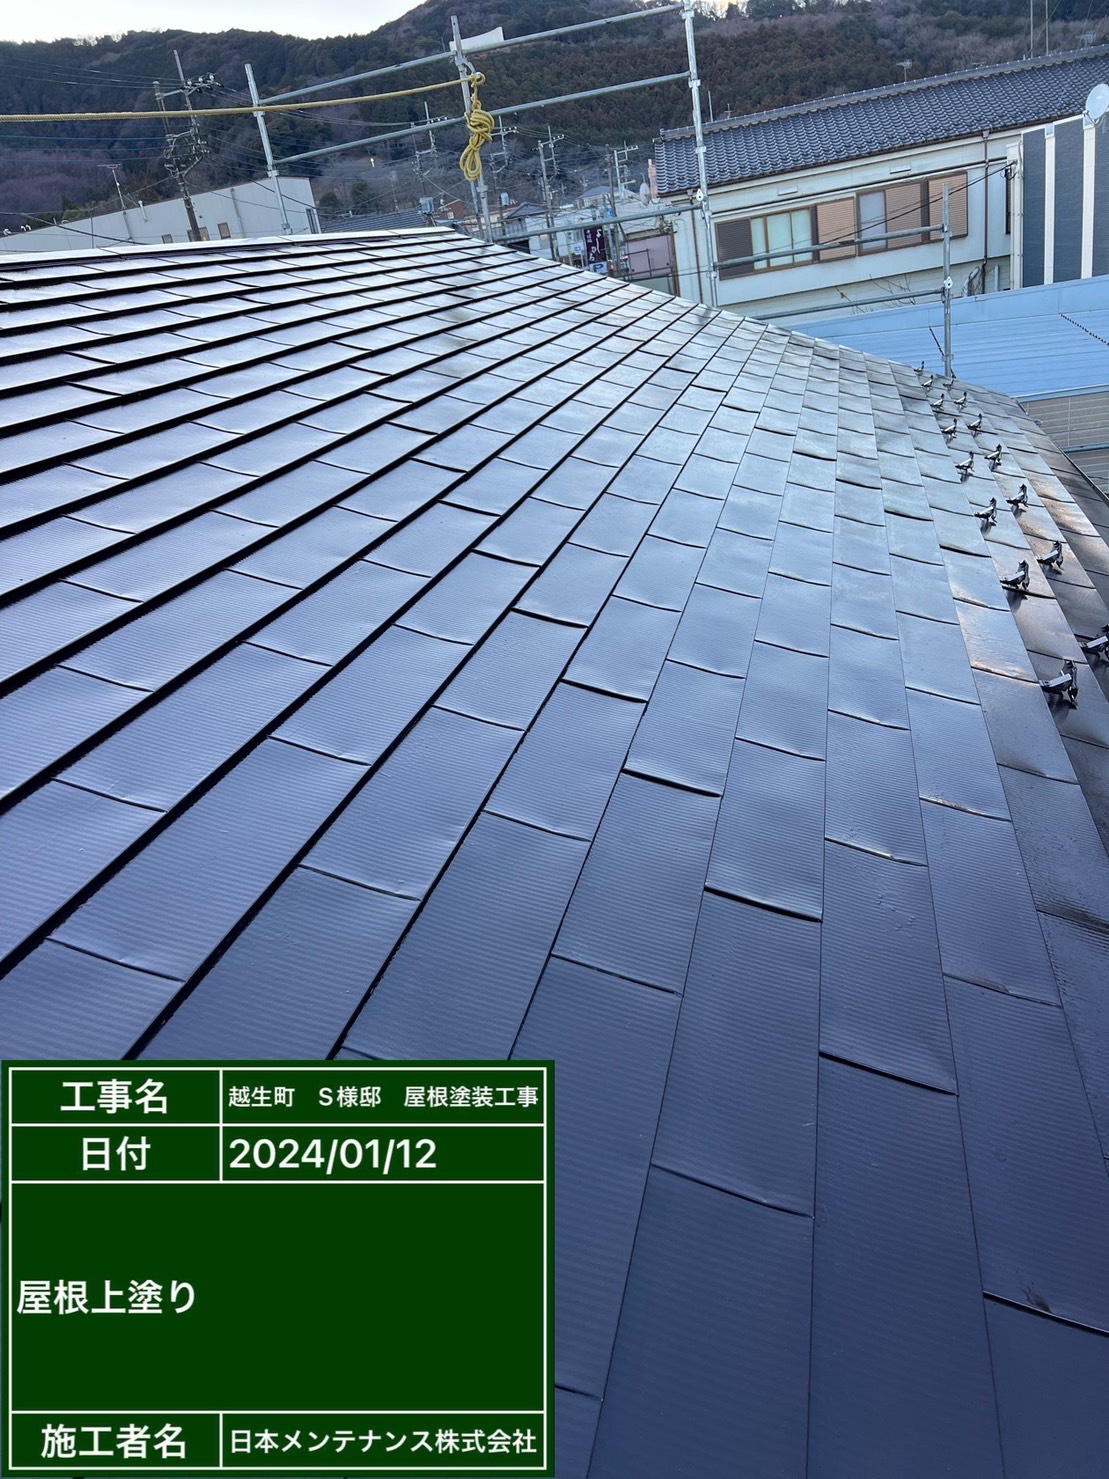 埼玉県越生町で金属屋根を茶色に塗り替えました。施工前